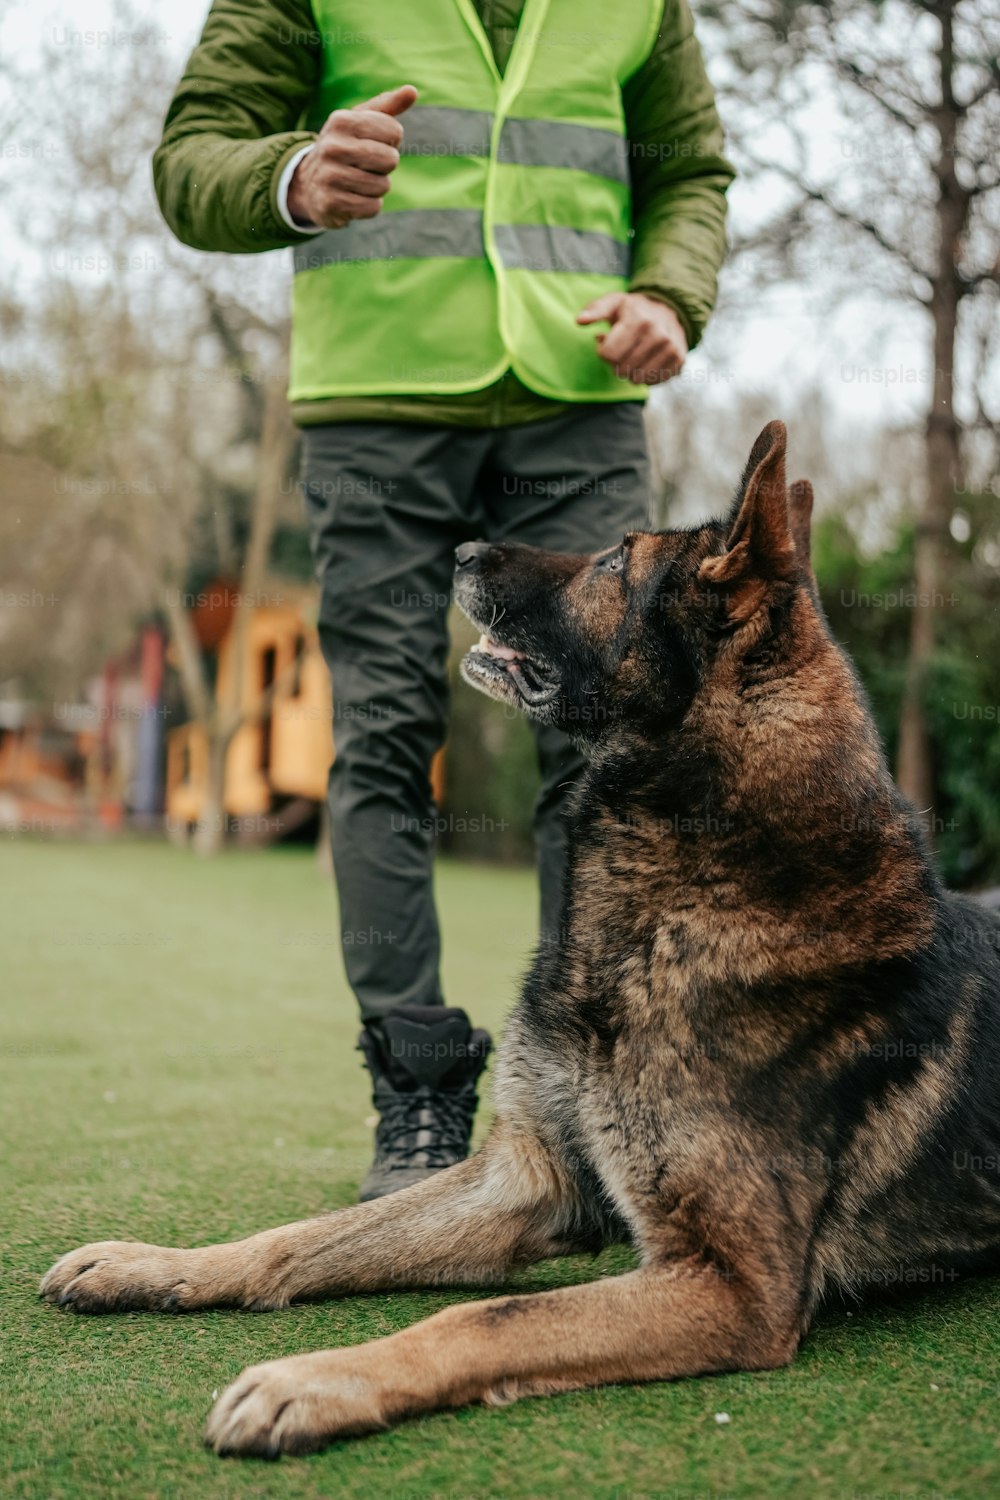 Un hombre con un chaleco de seguridad parado junto a un perro